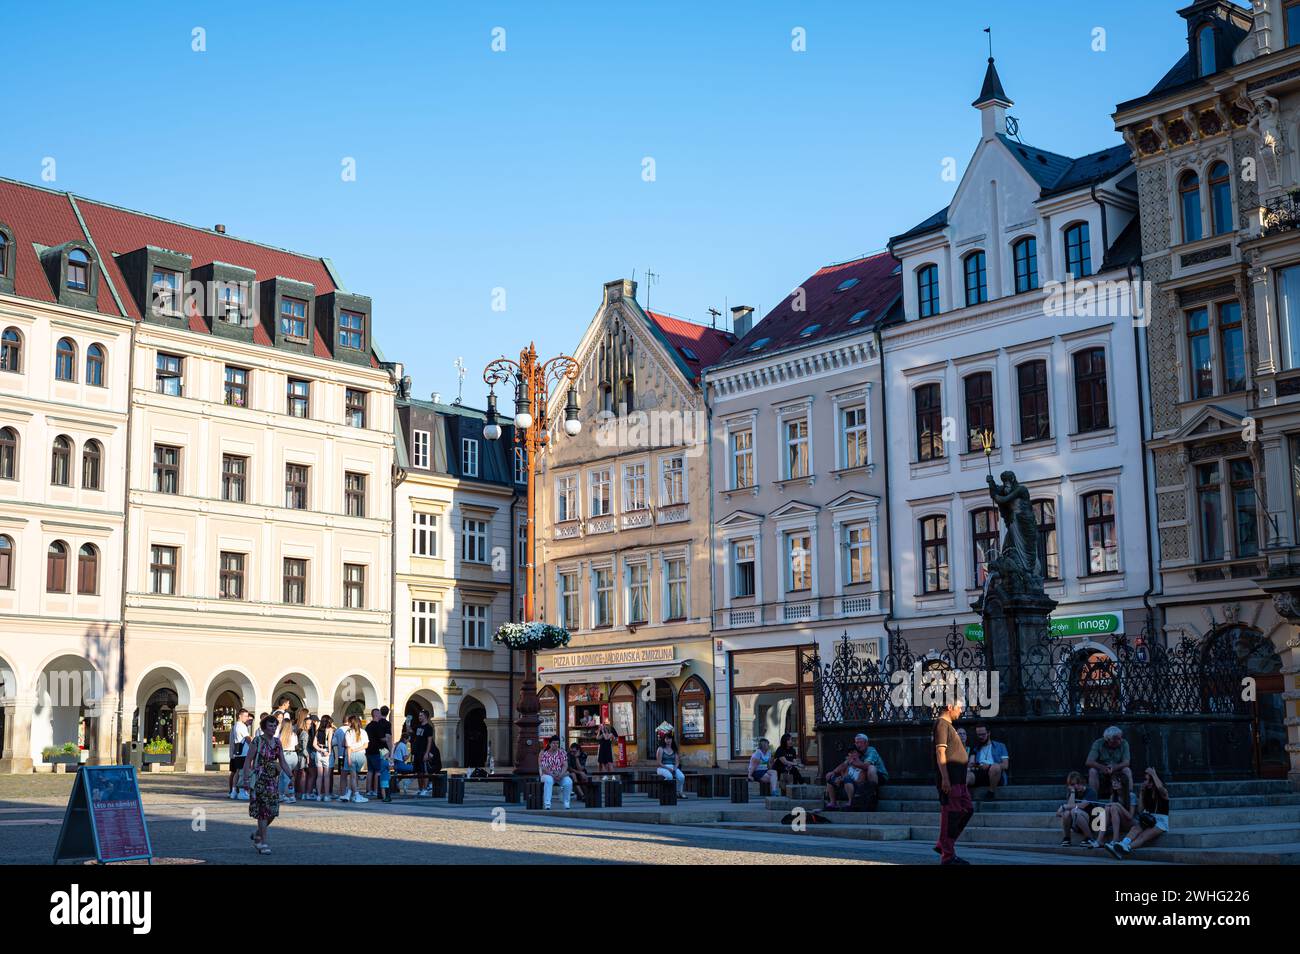 Place du marché avec des maisons antiques pittoresques à Liberec, Tchéquie Banque D'Images